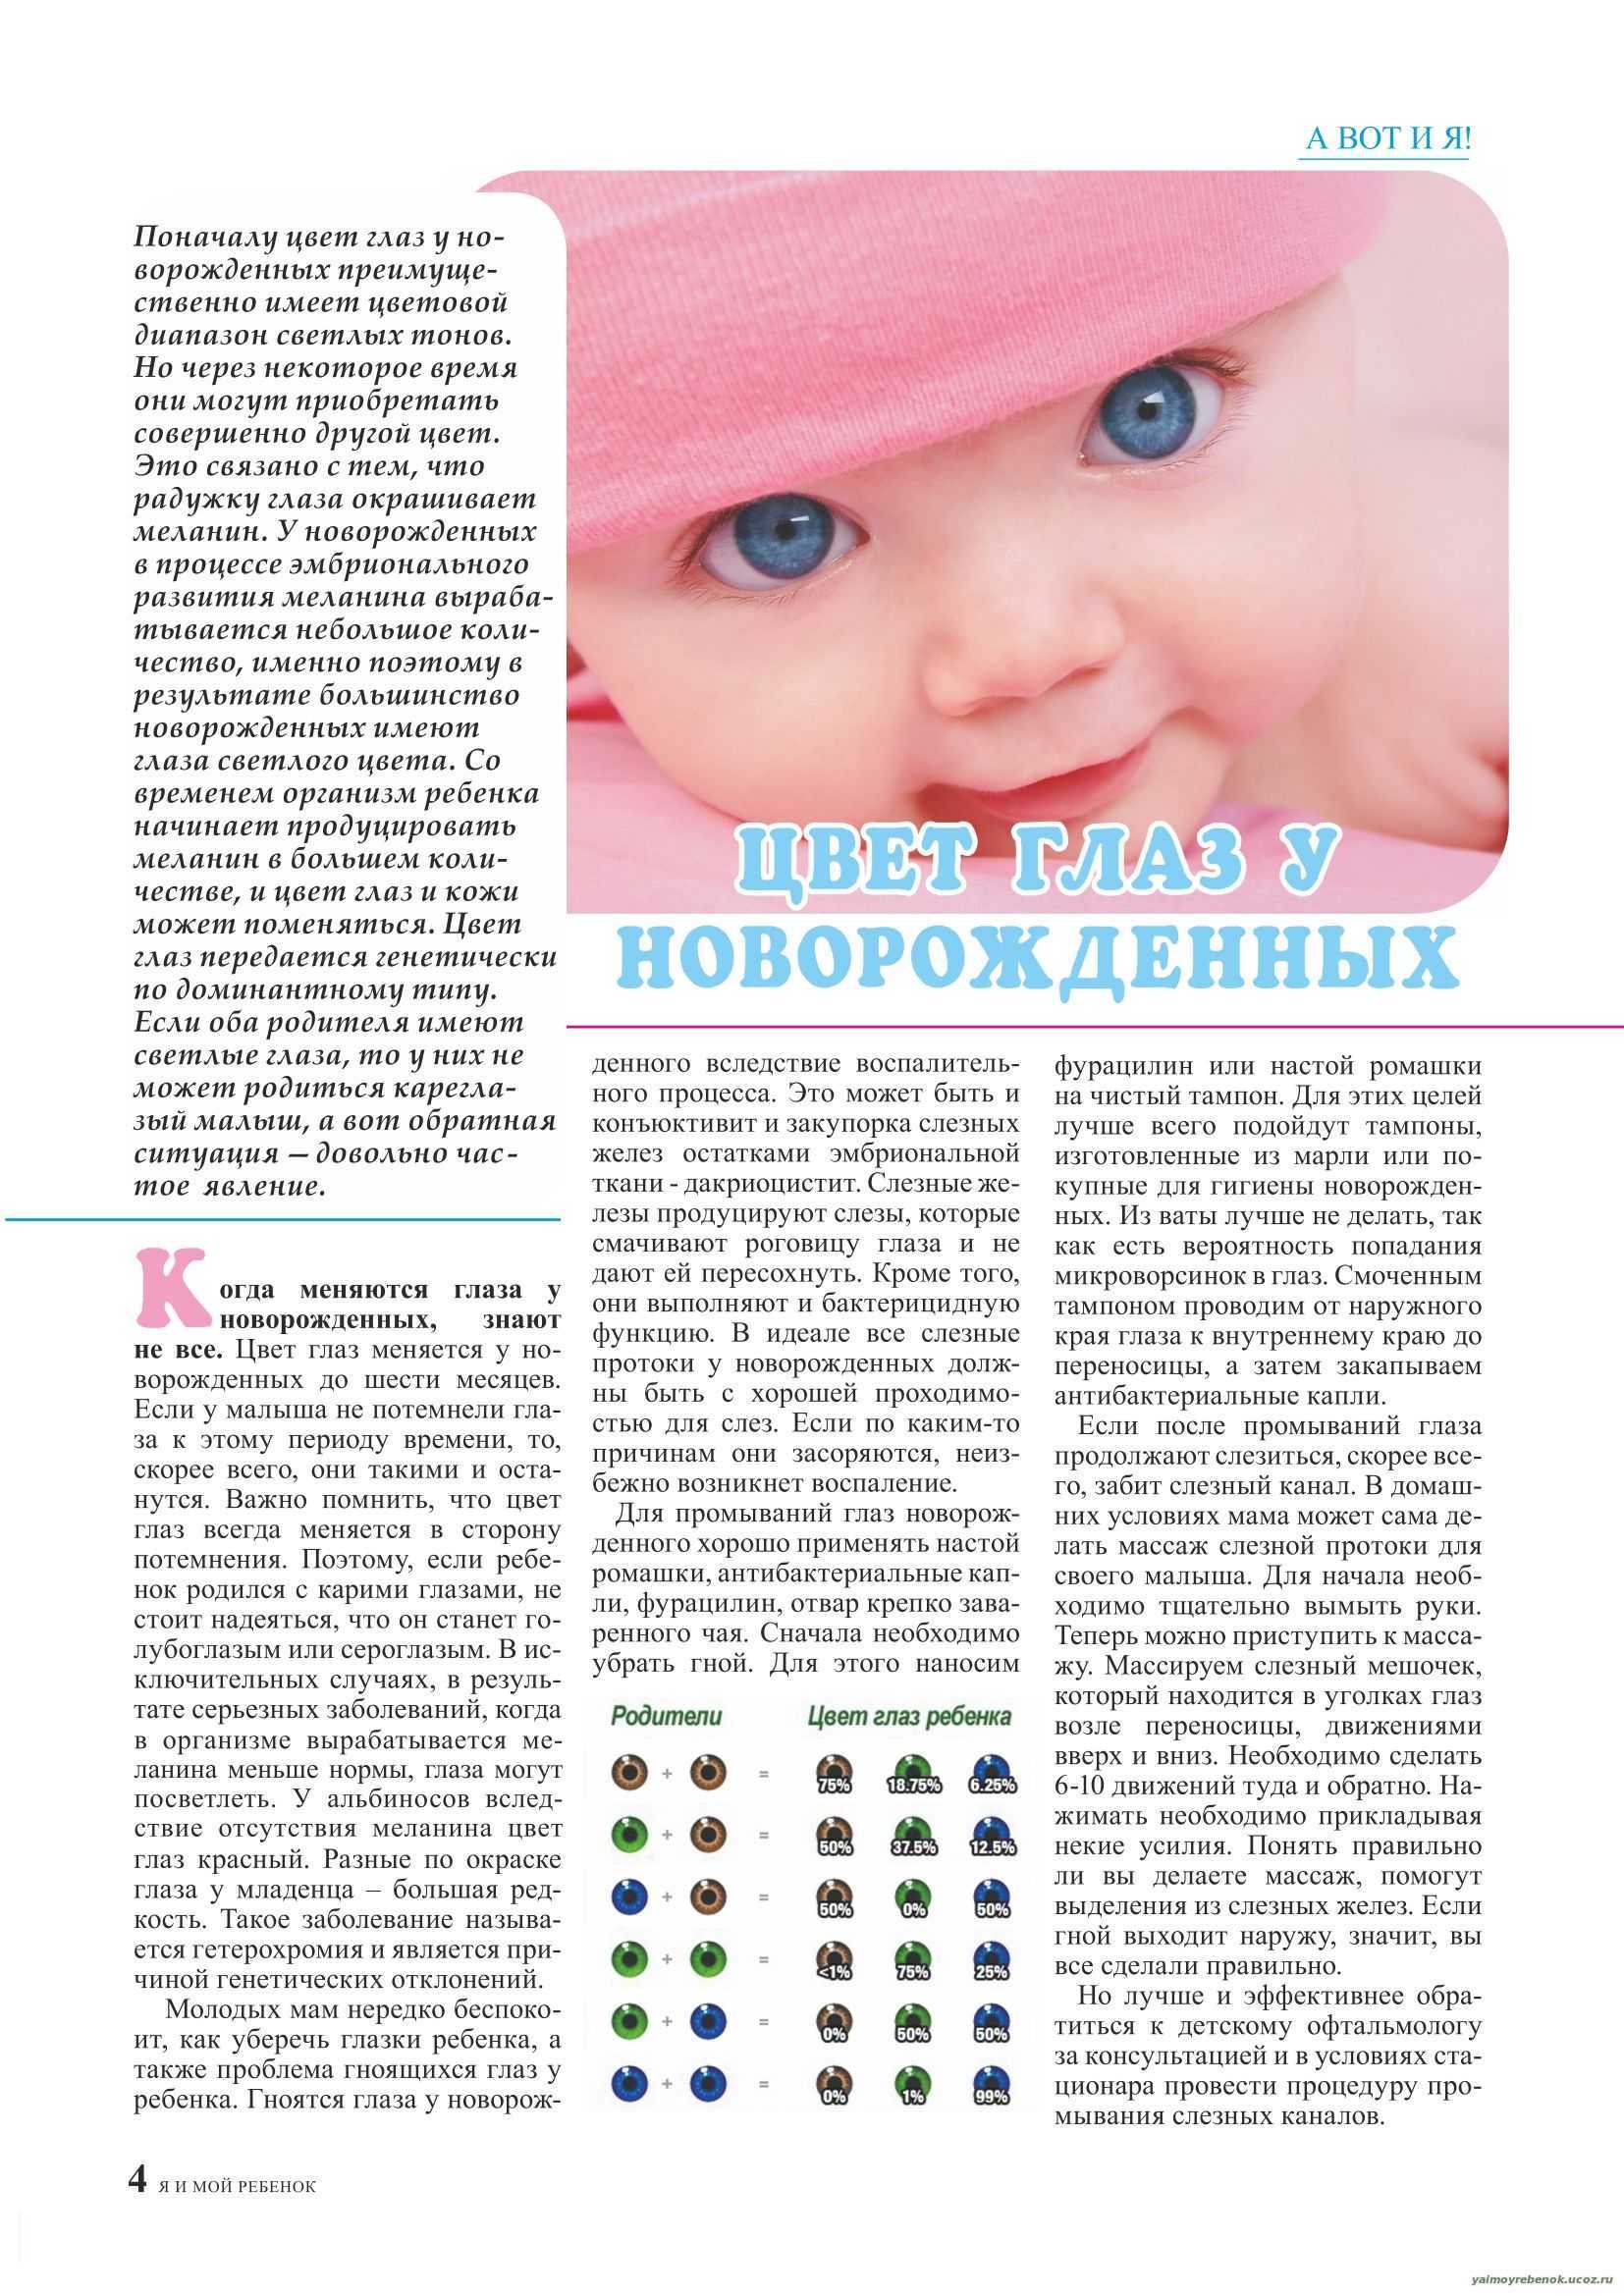 Цвет глаз у новорожденных таблица. Меняется цвет глаз у новорожденных. Когда у ребенка формируется цвет глаз. Цвет глаз у новорожденных.